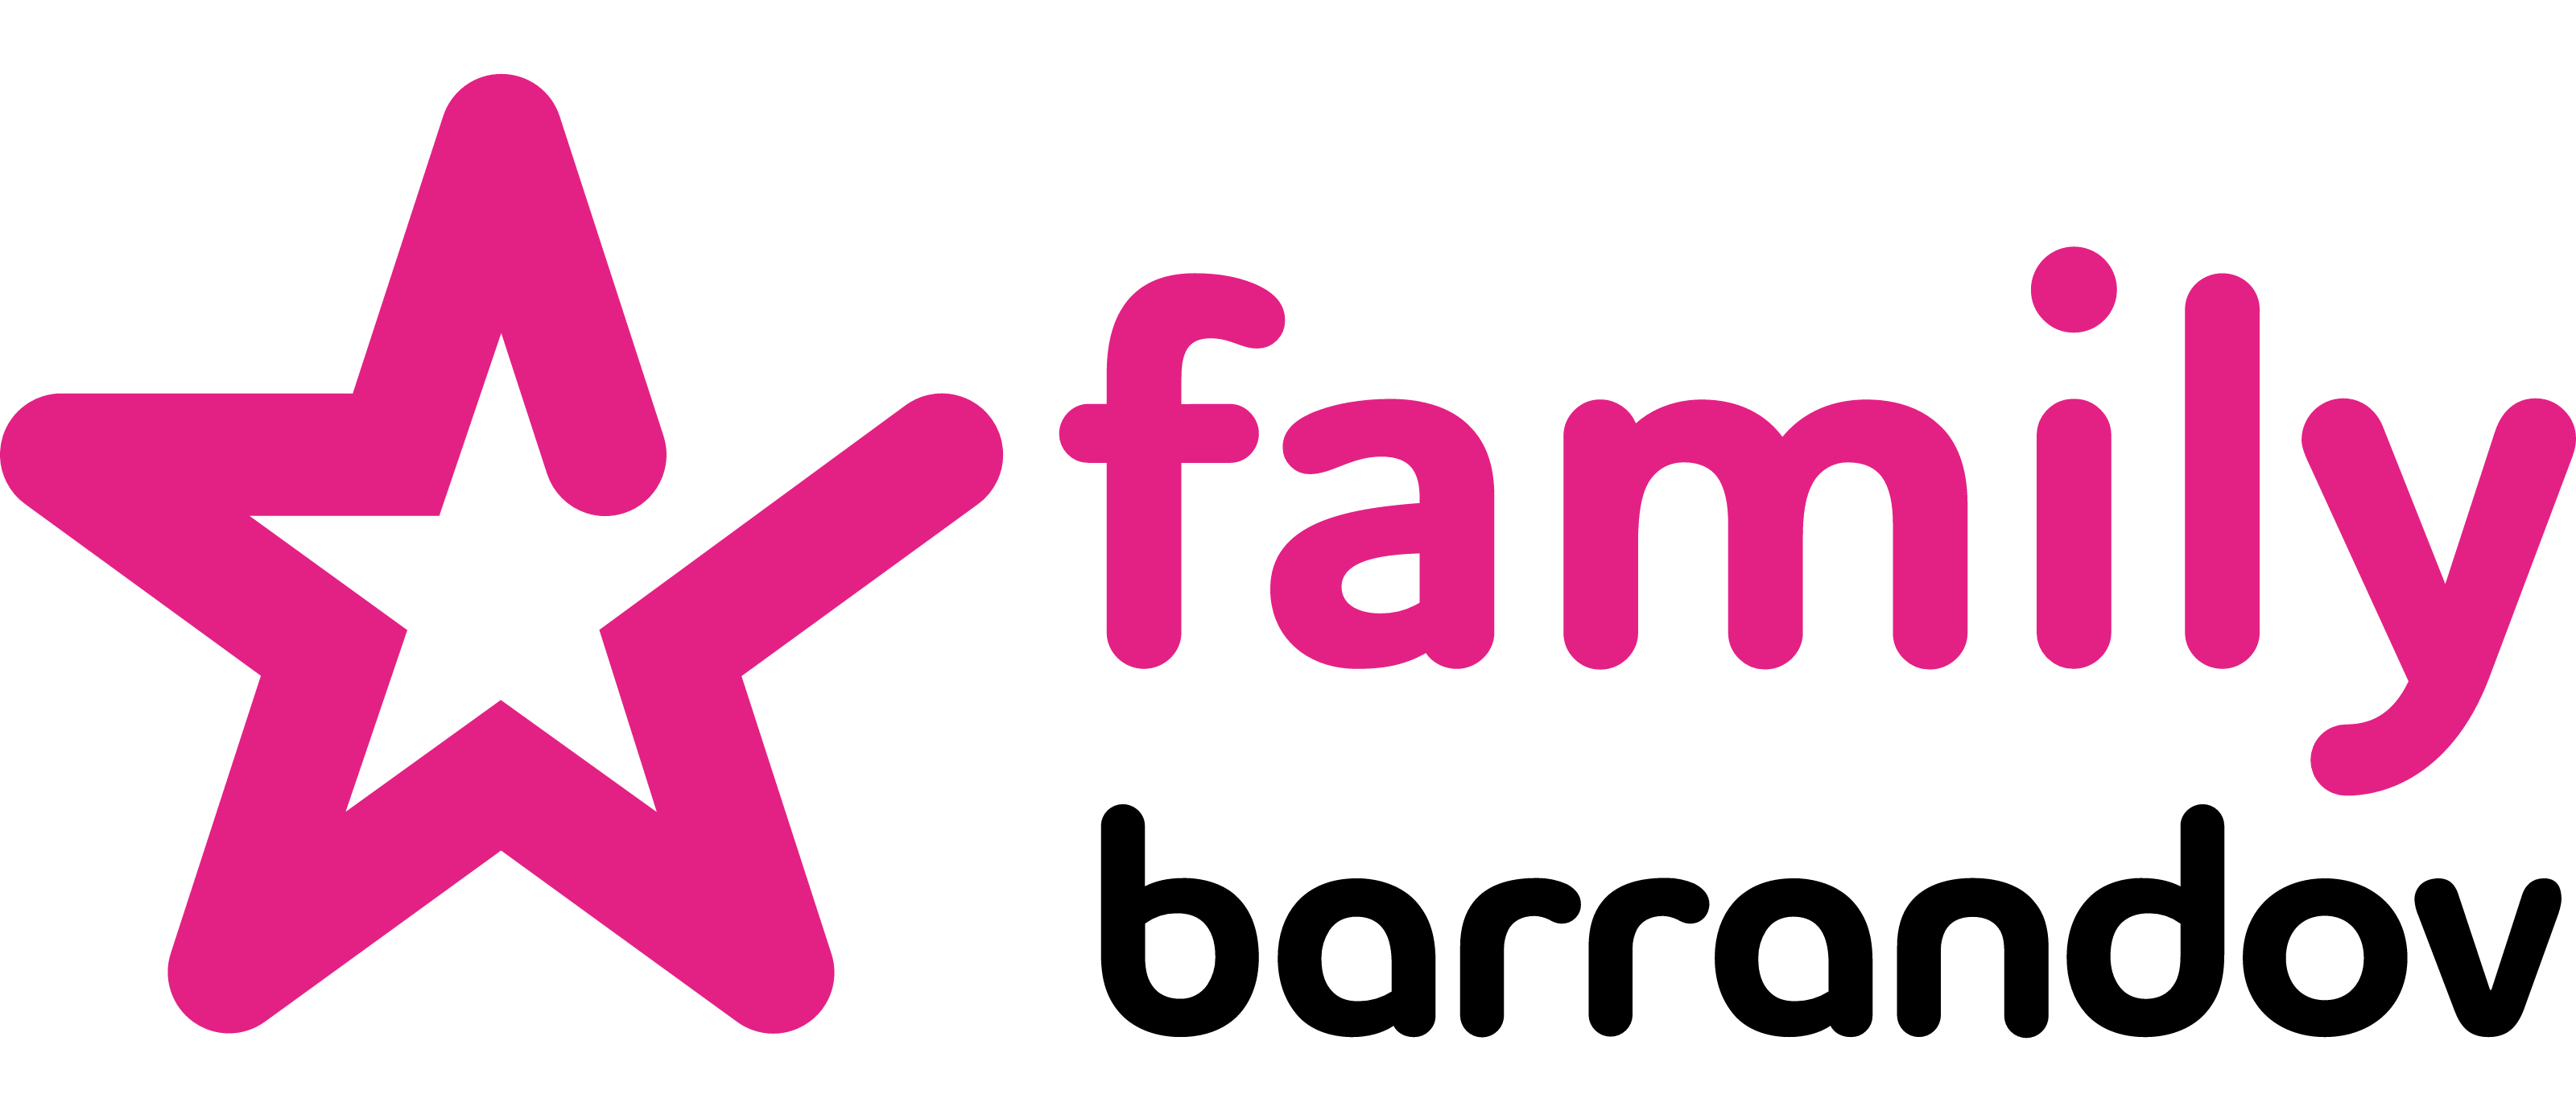 Barrandov Family logo